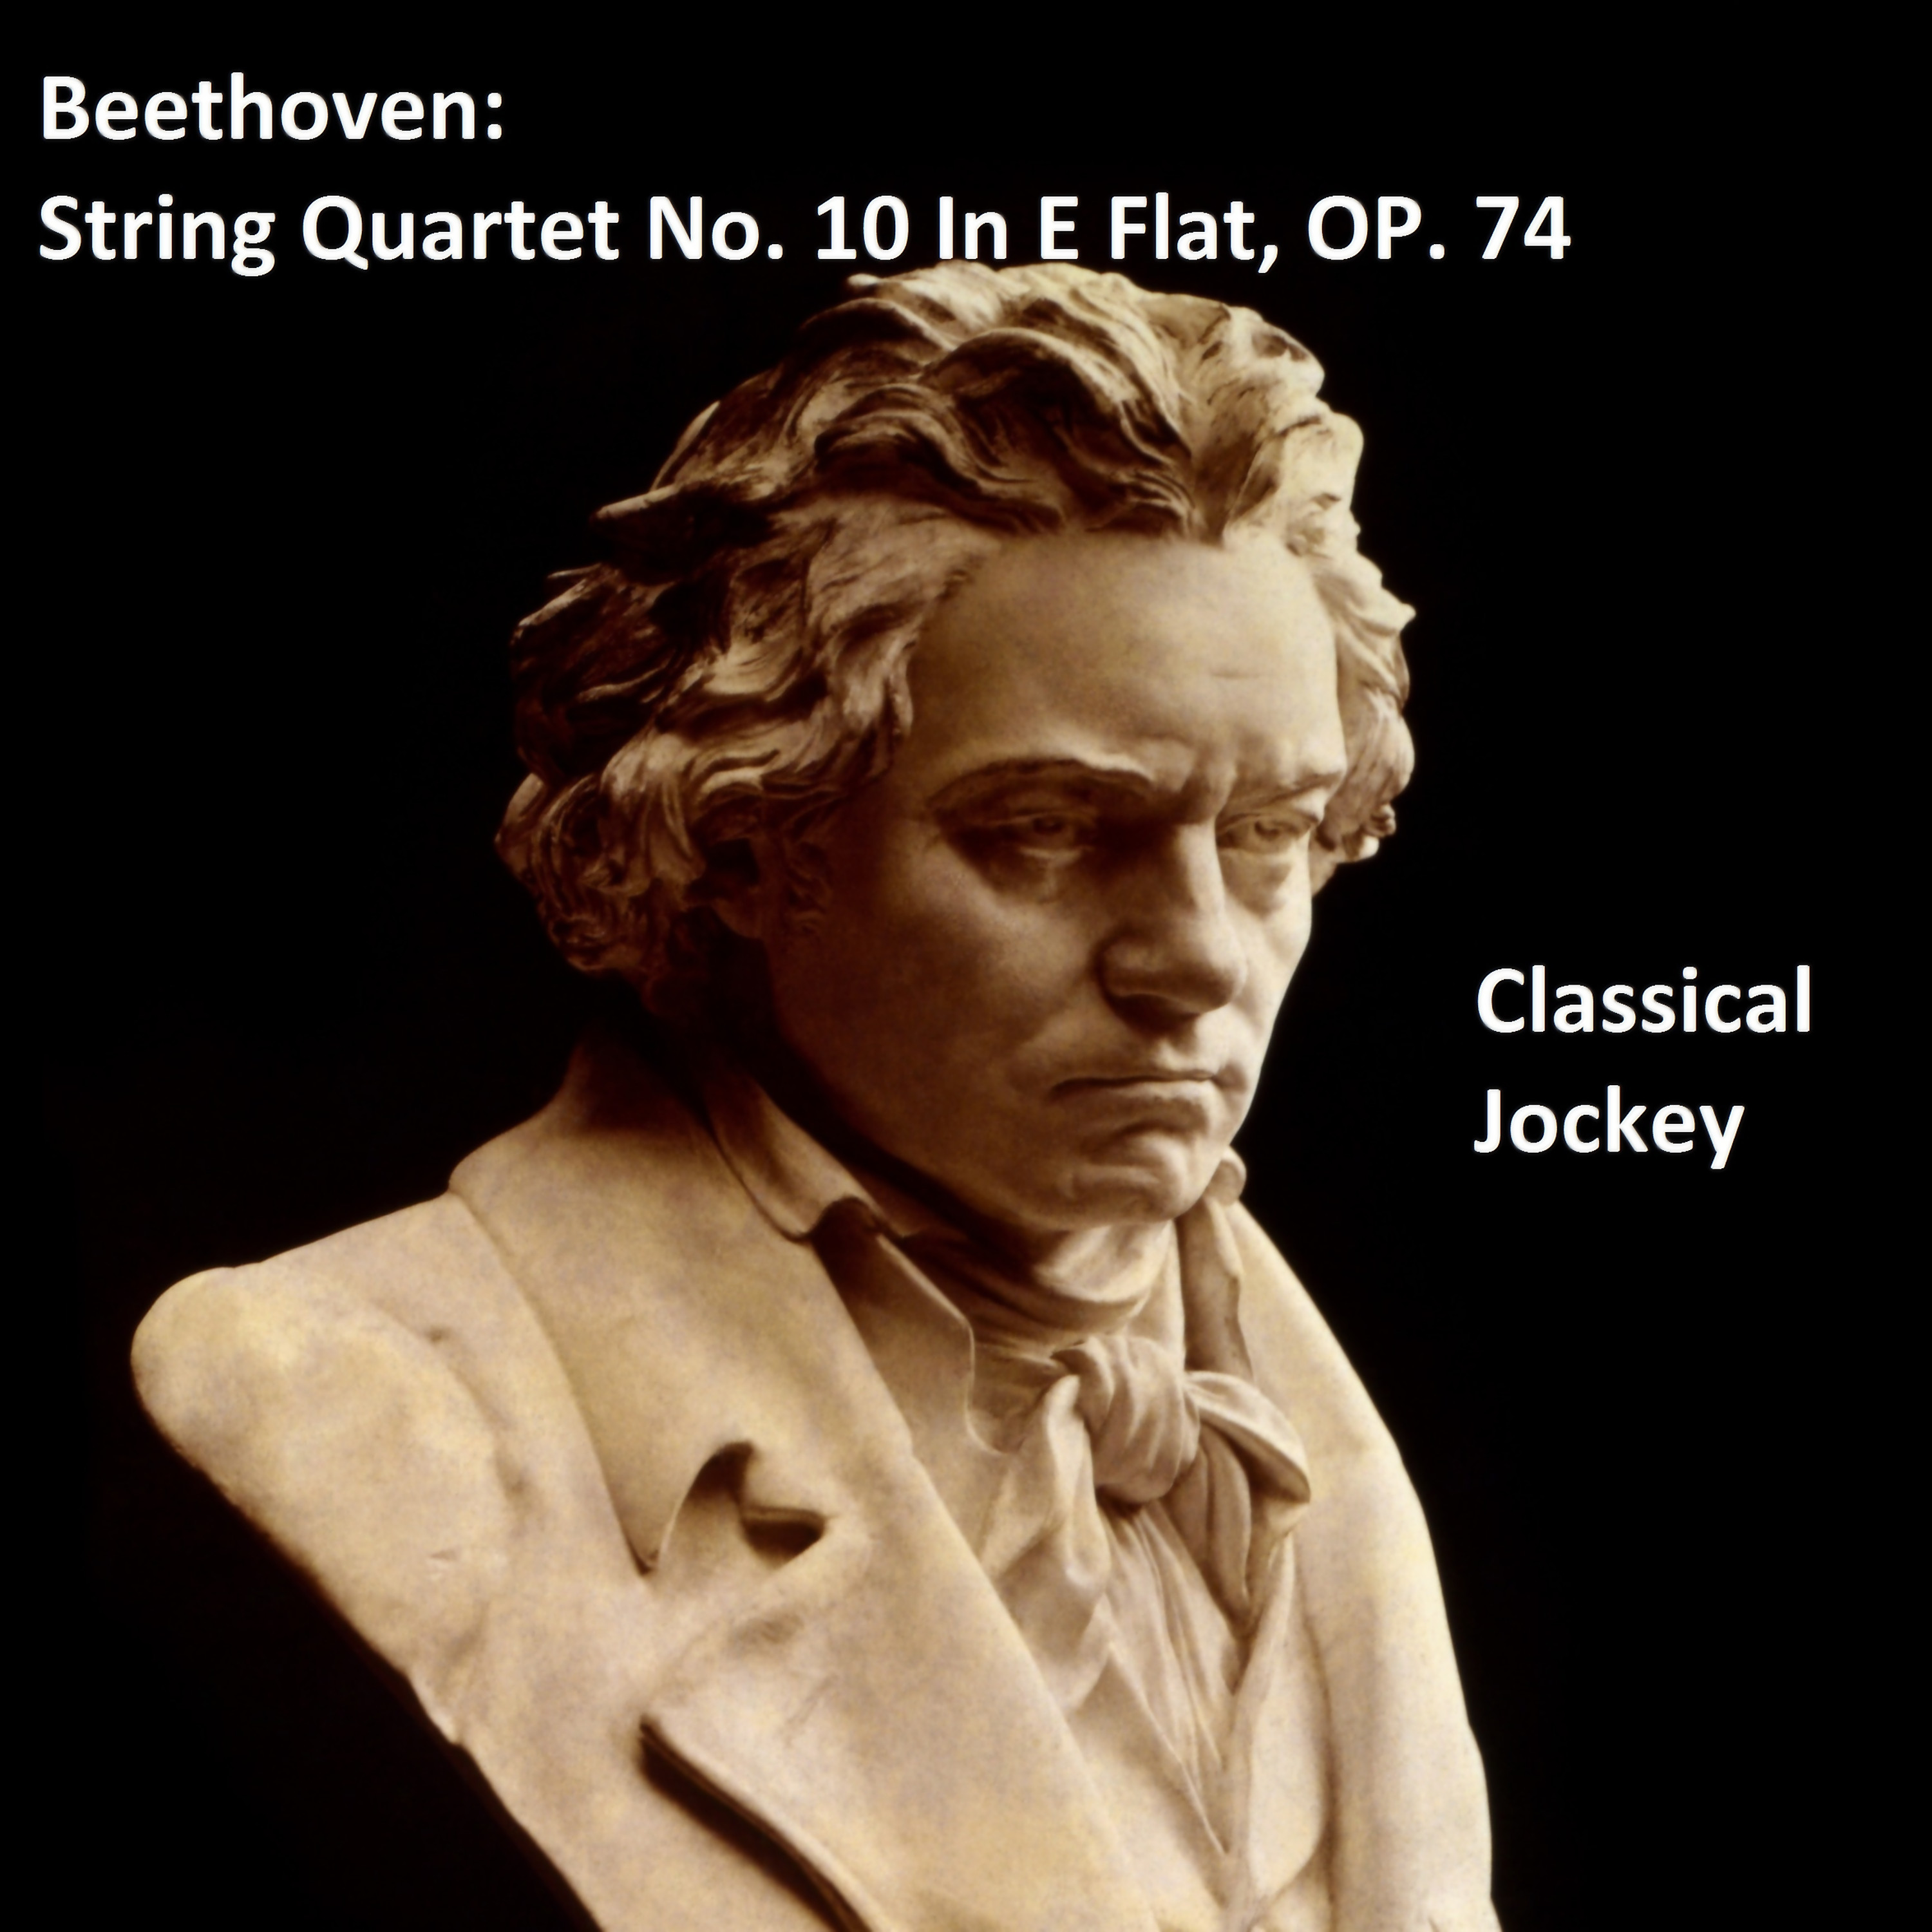 Beethoven: String Quartet No. 10 In E Flat, Op. 74 - Adagio ma non troppo